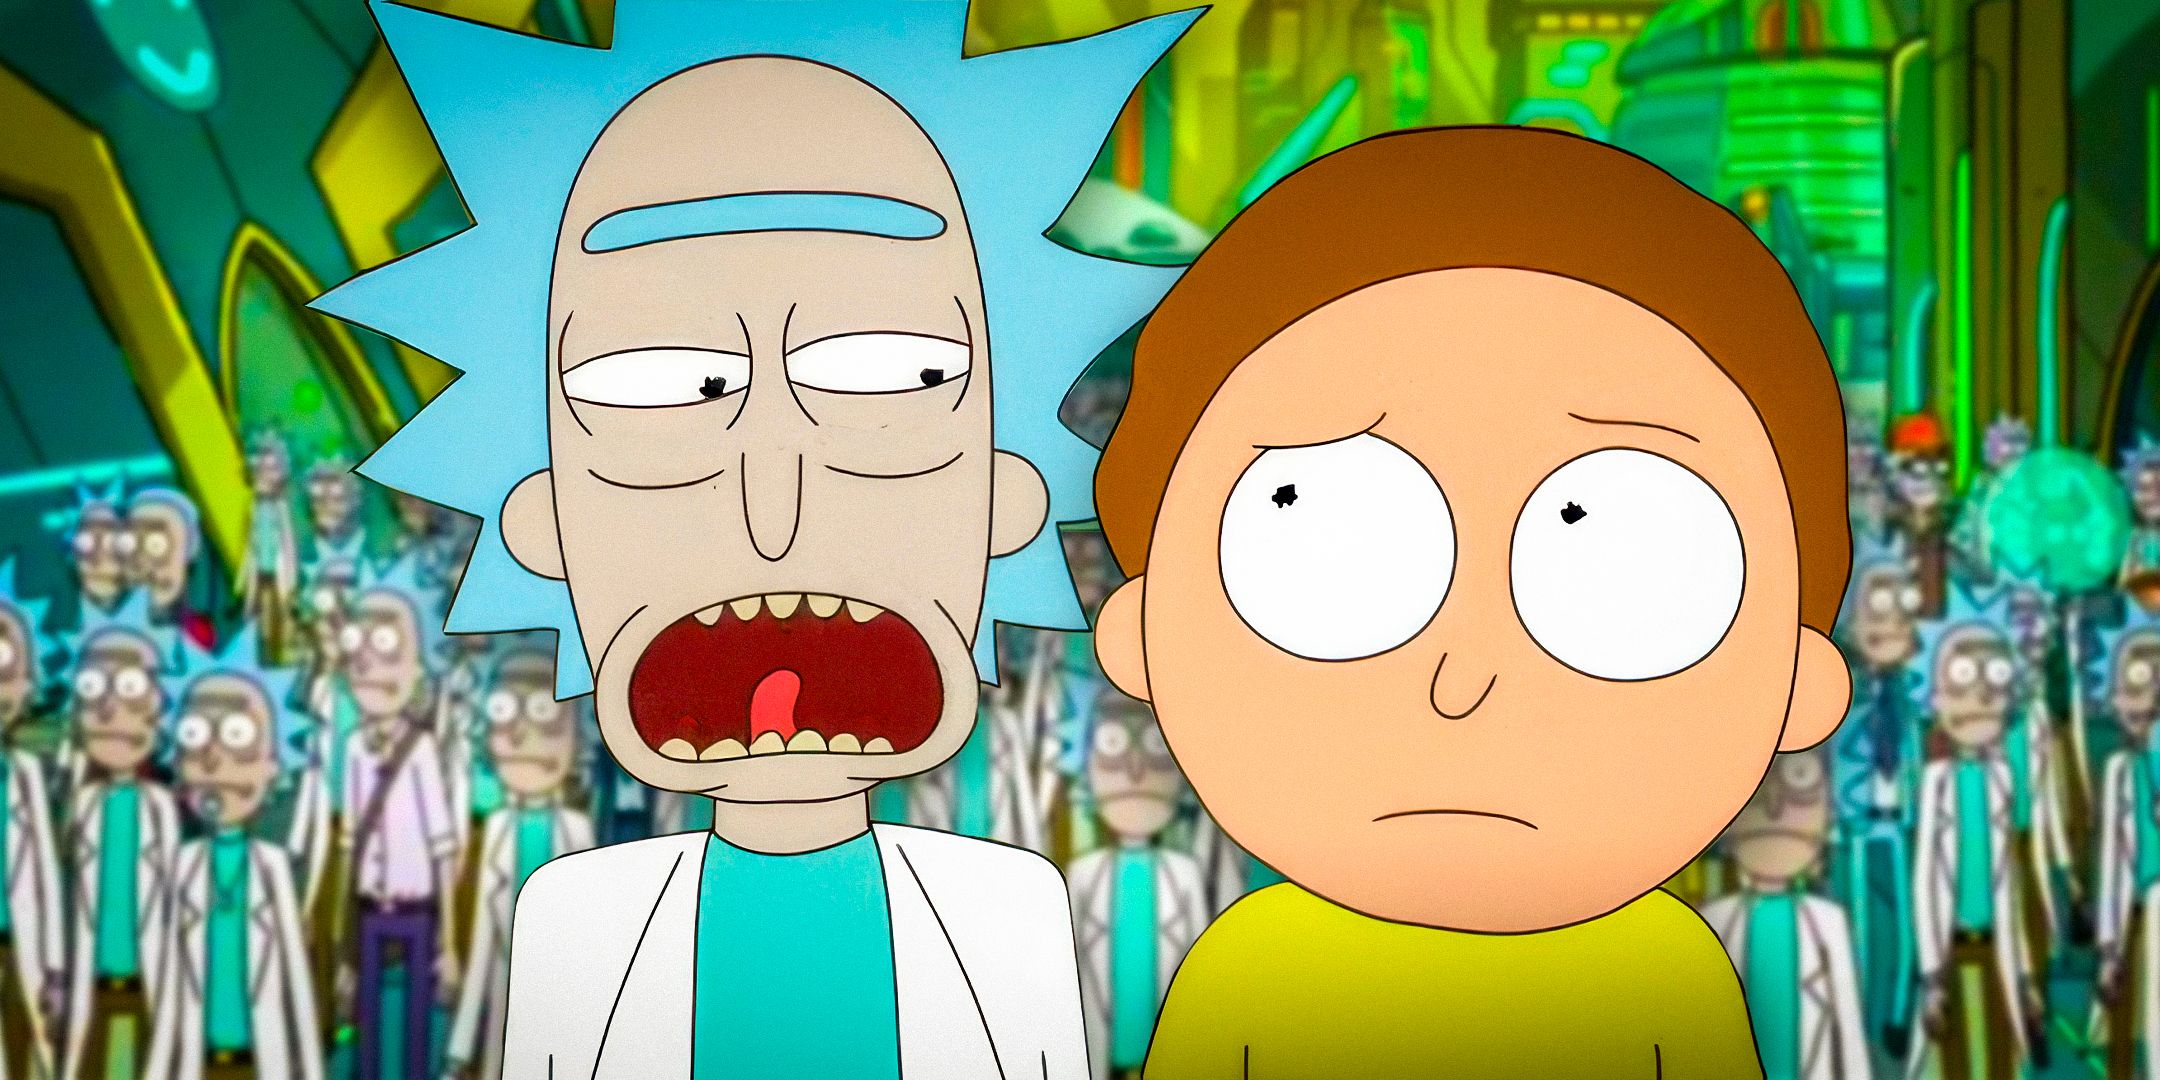 El episodio mejor calificado de Rick y Morty resuelve perfectamente un viejo debate entre fanáticos sobre el programa